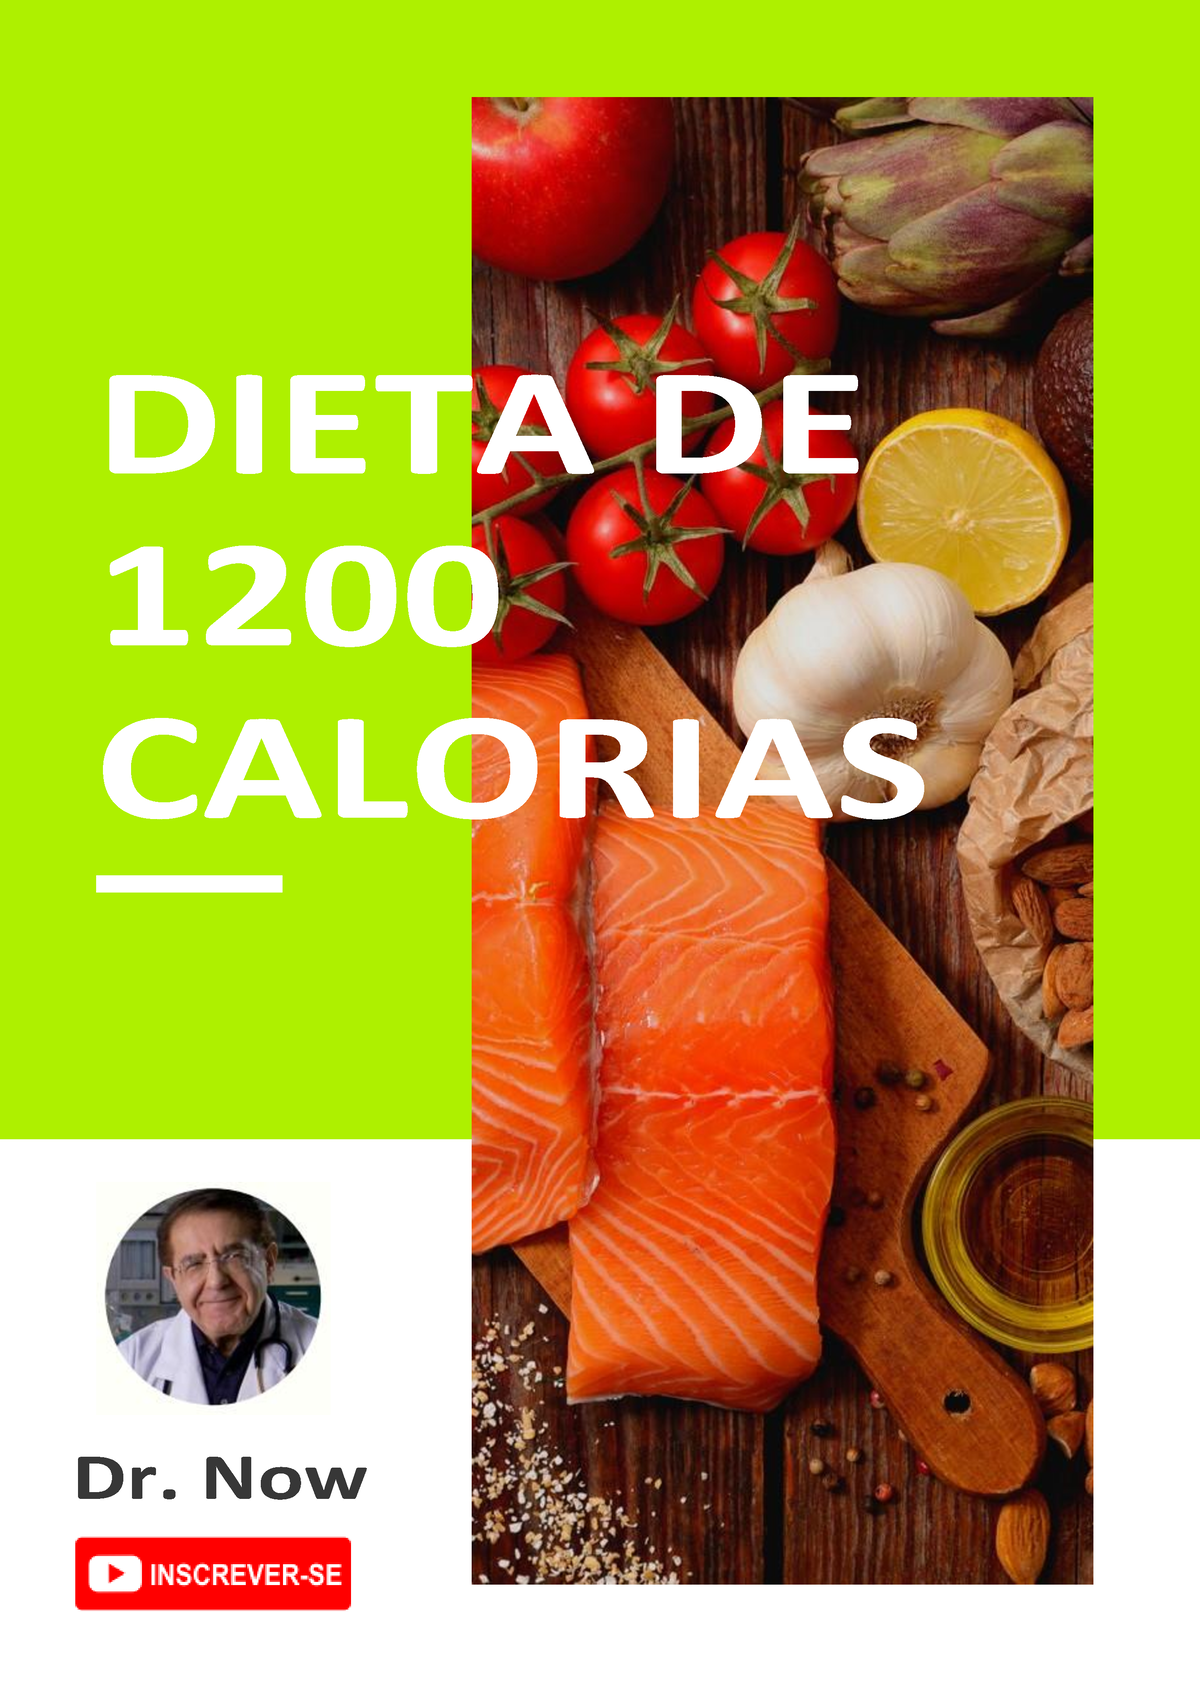 Como funciona a dieta de 1200 calorias do Dr. Now - MundoBoaForma